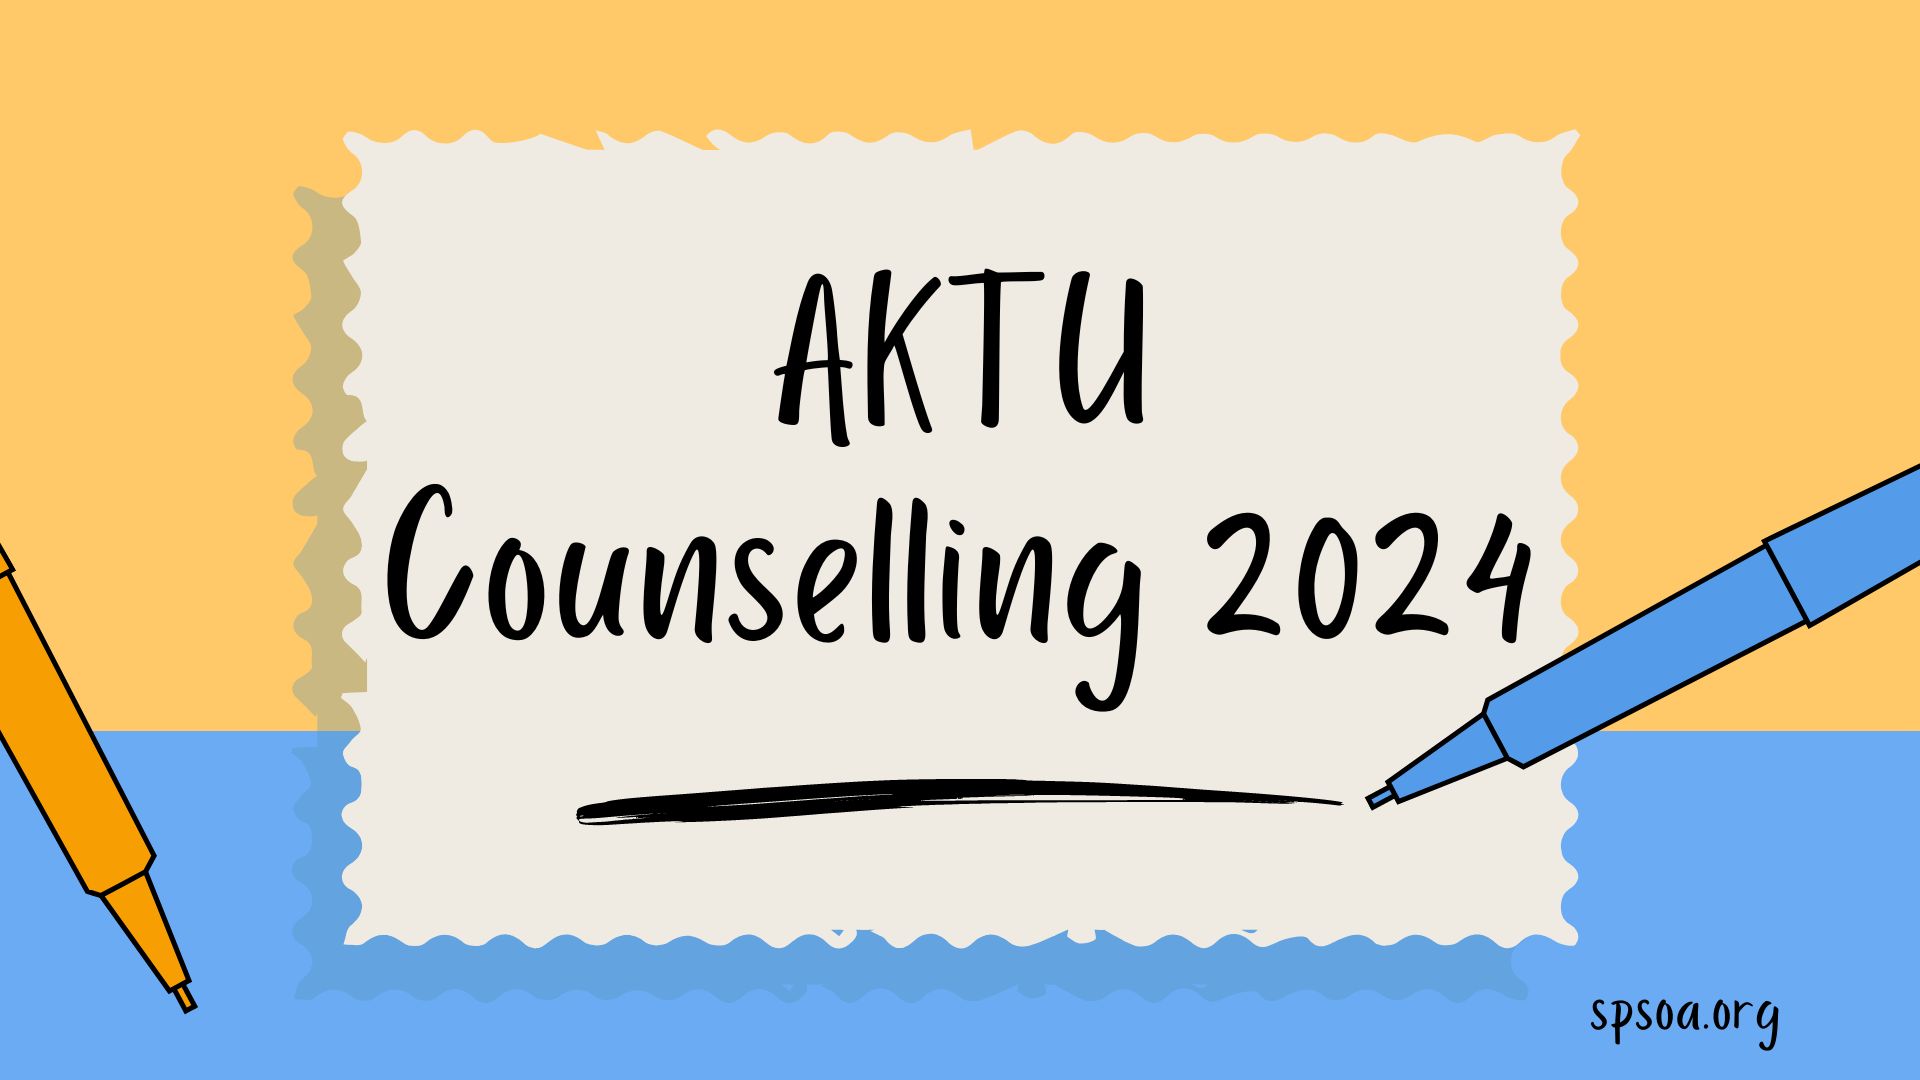 AKTU Counselling 2024